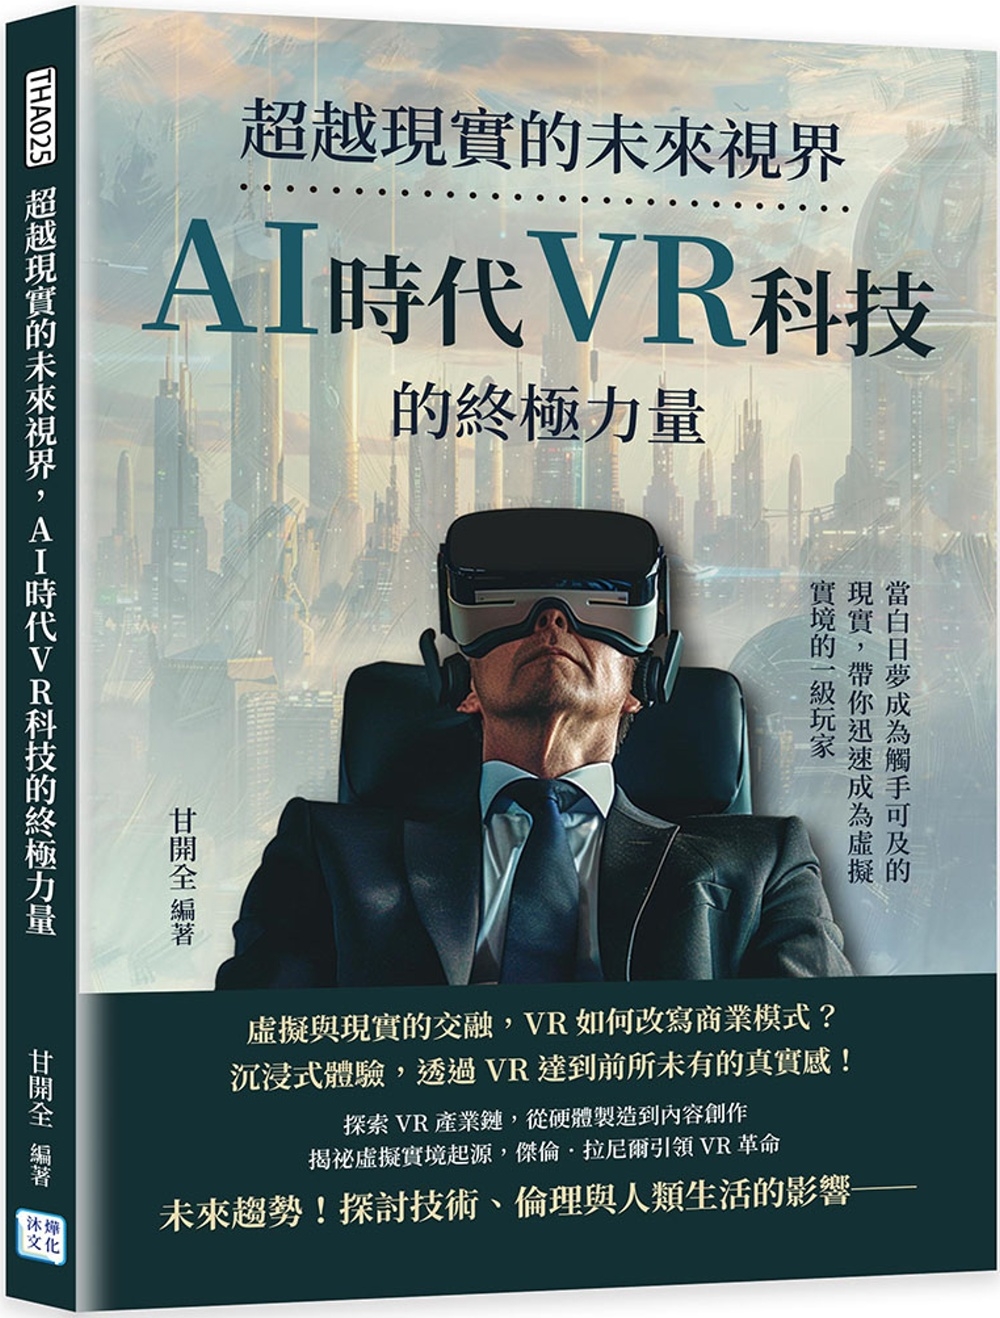 超越現實的未來視界，AI時代VR科技的終極力量：當白日夢成為觸手可及的現實，帶你迅速成為虛擬實境的一級玩家